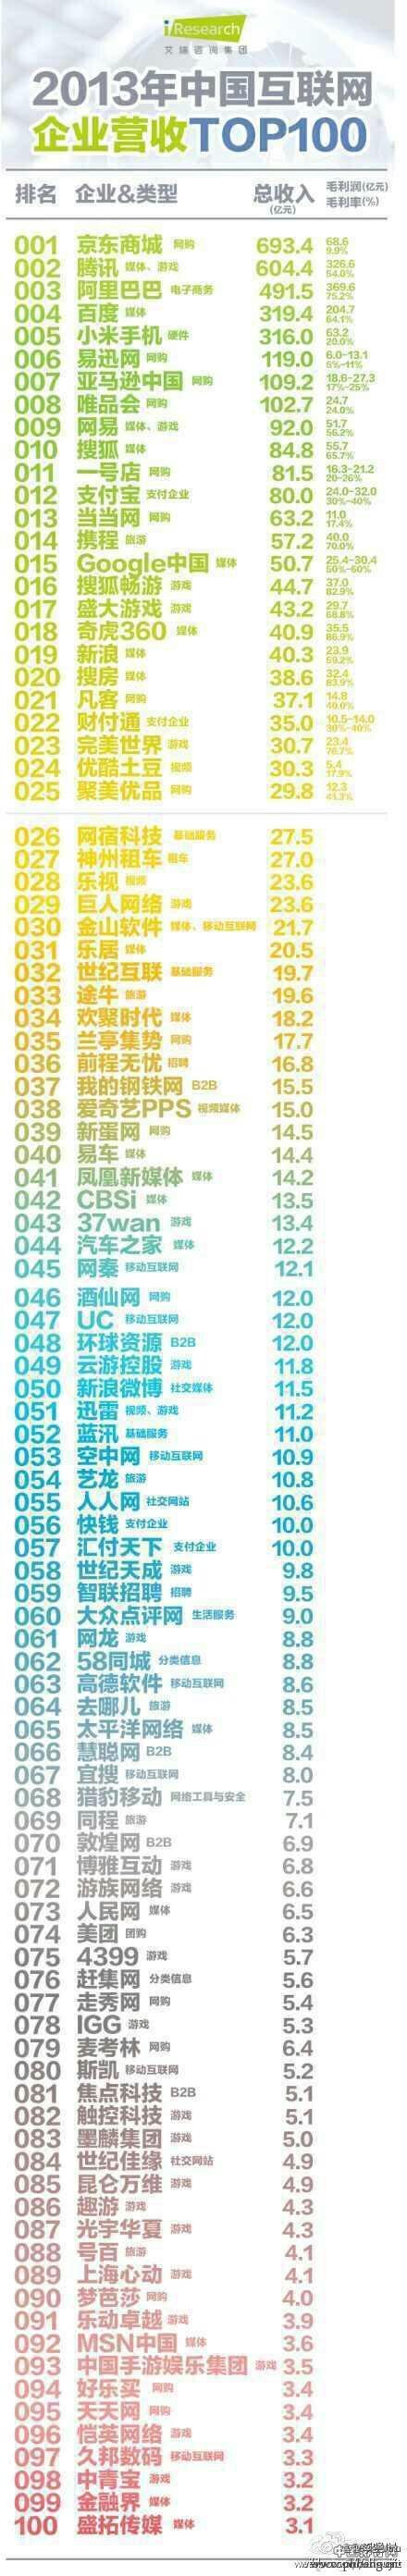 2013年中国互联网企业营收排行榜